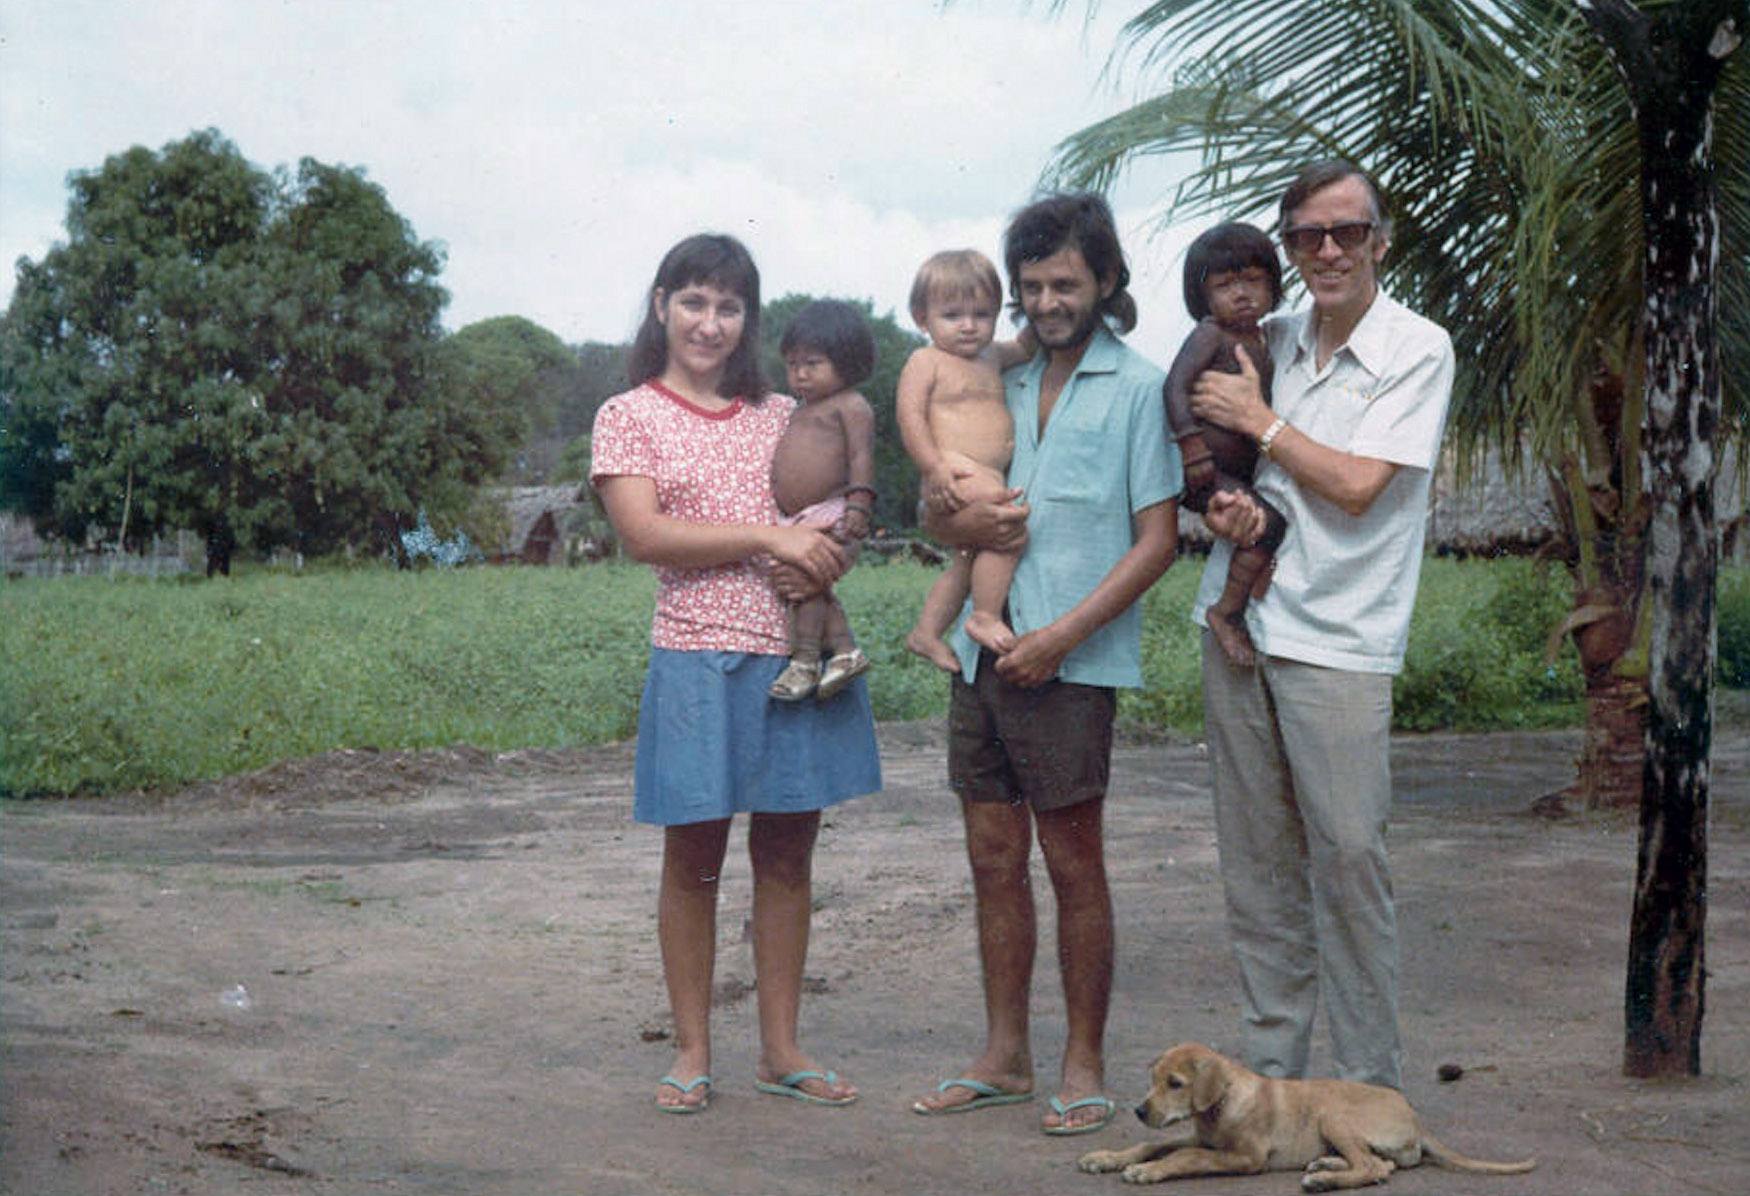 Pedro Casaldáliga amb l'autora d'aquest text, Eunice, el seu marit Luiz i el seu fill André poc després d'arribar a la comunitat indígena Apyãwa.